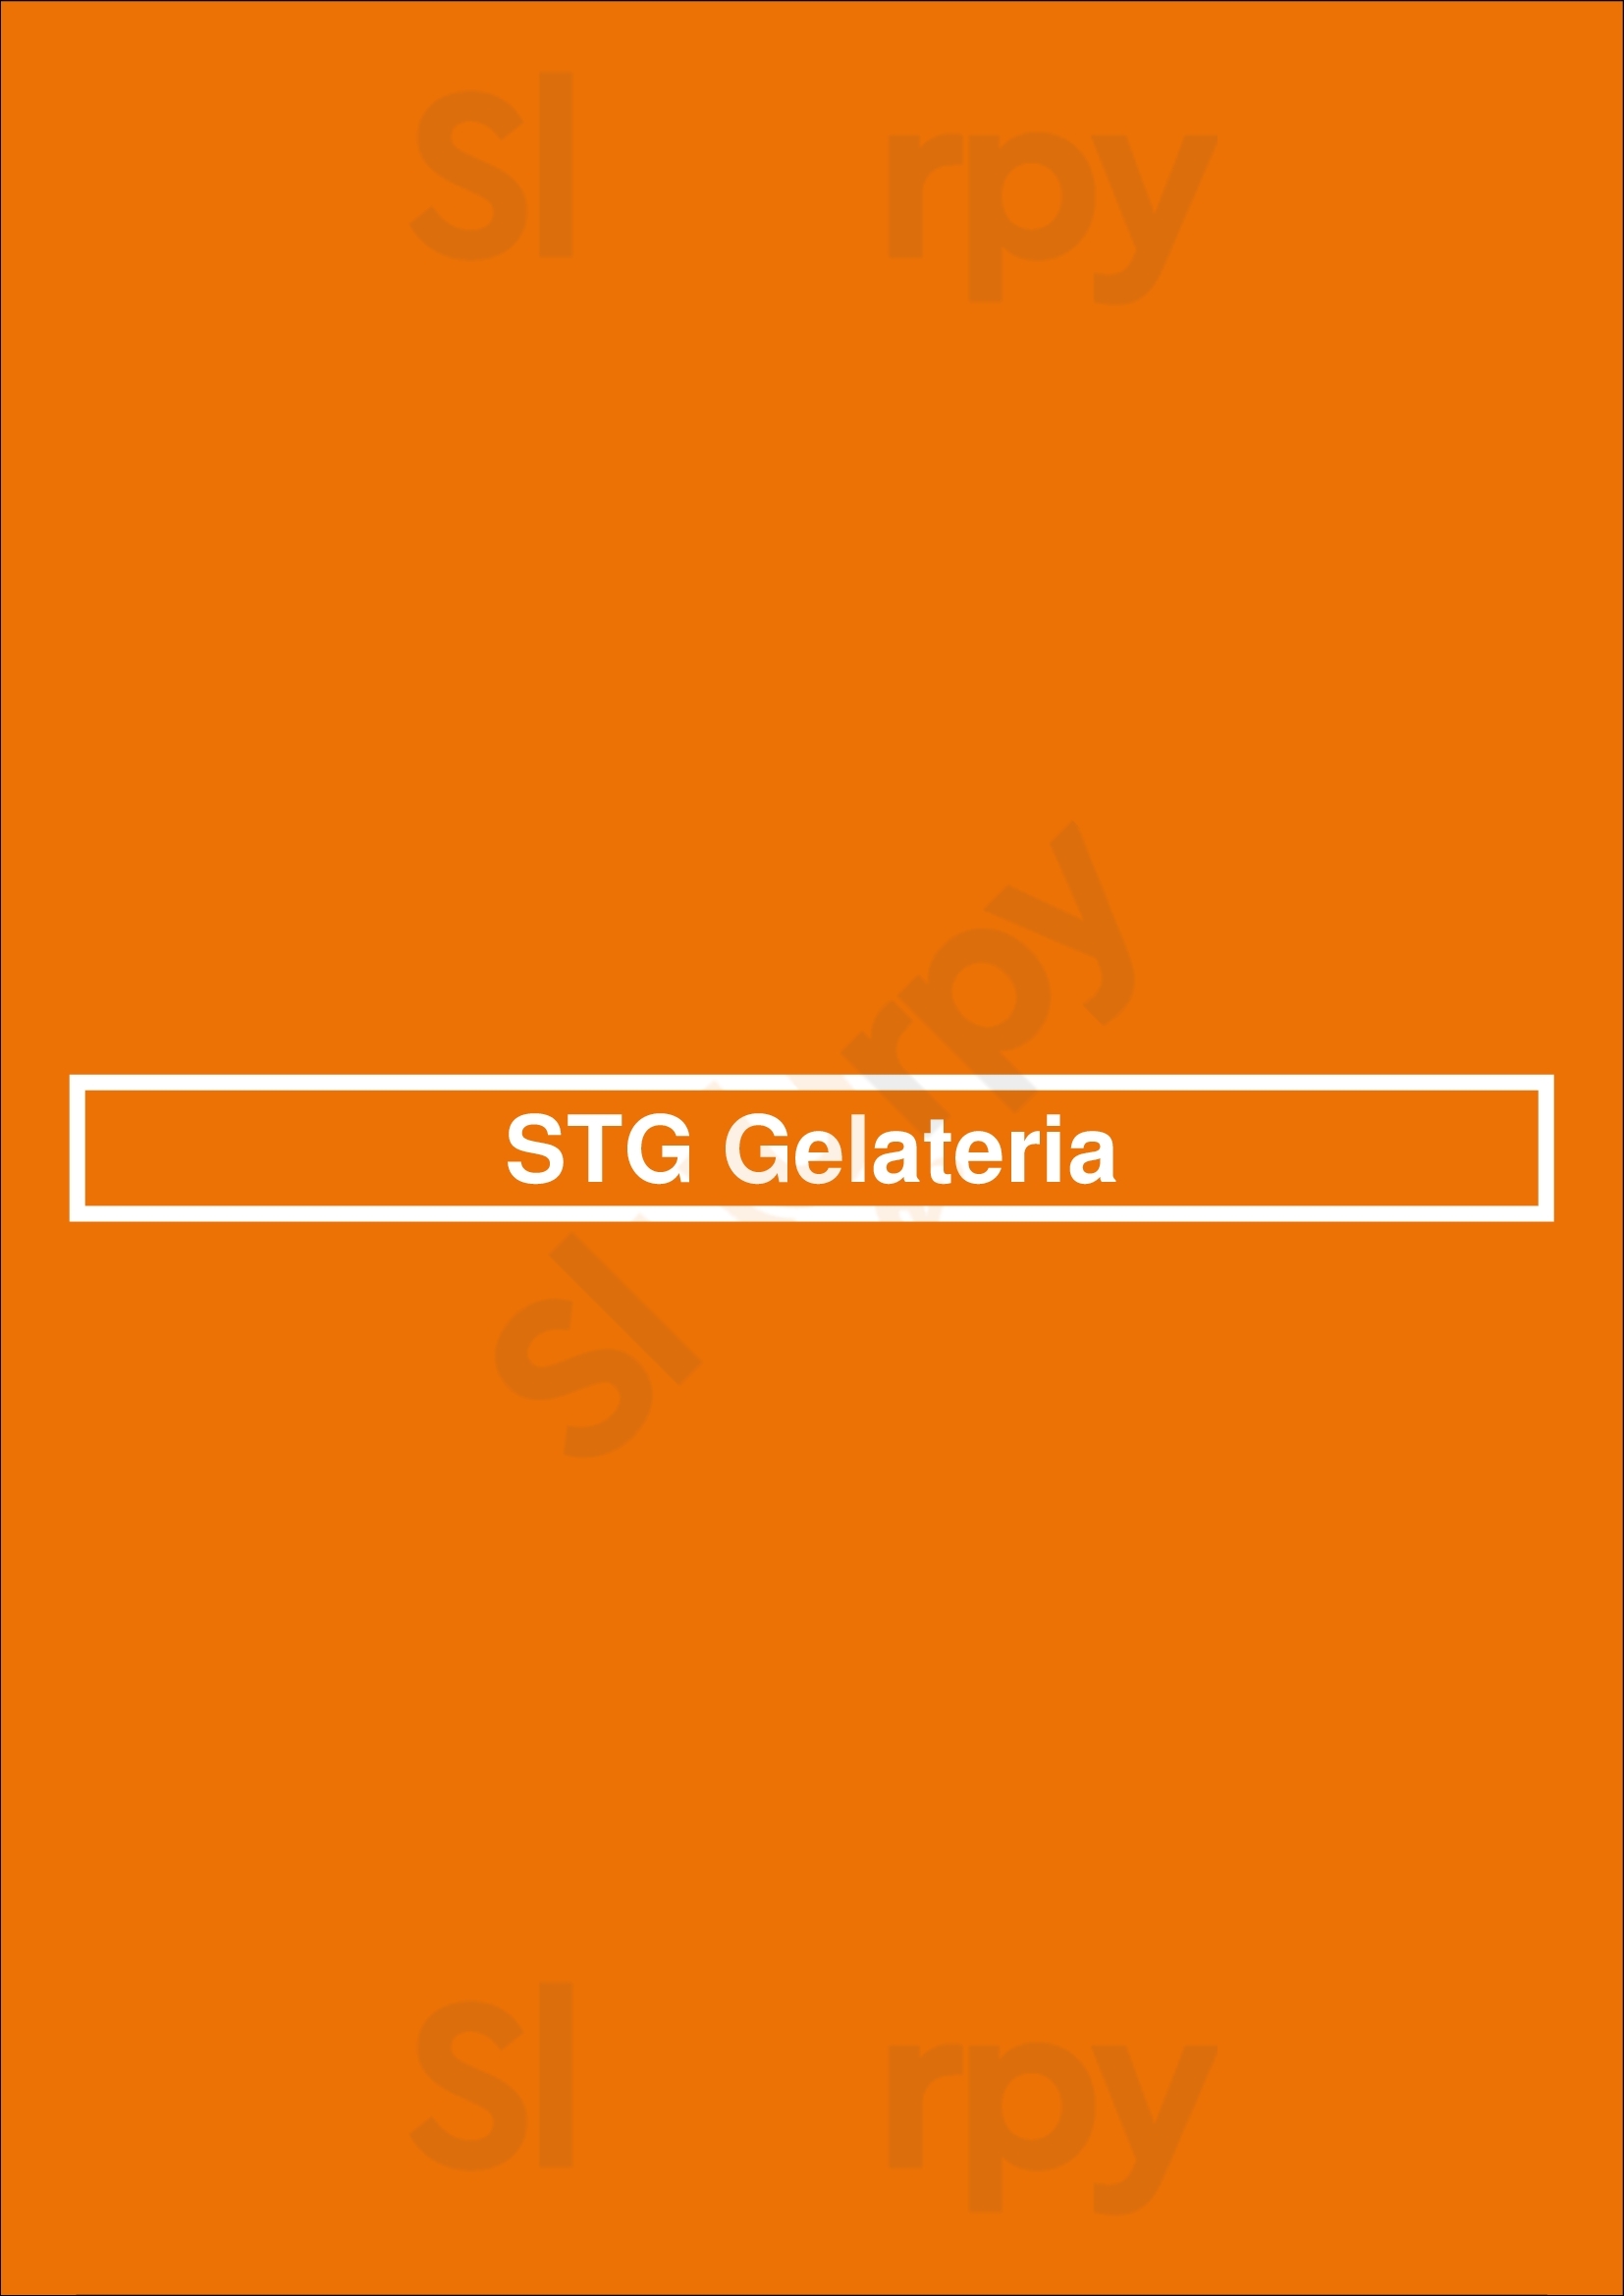 Bagelarium & Stg Gelateria Tulsa Menu - 1